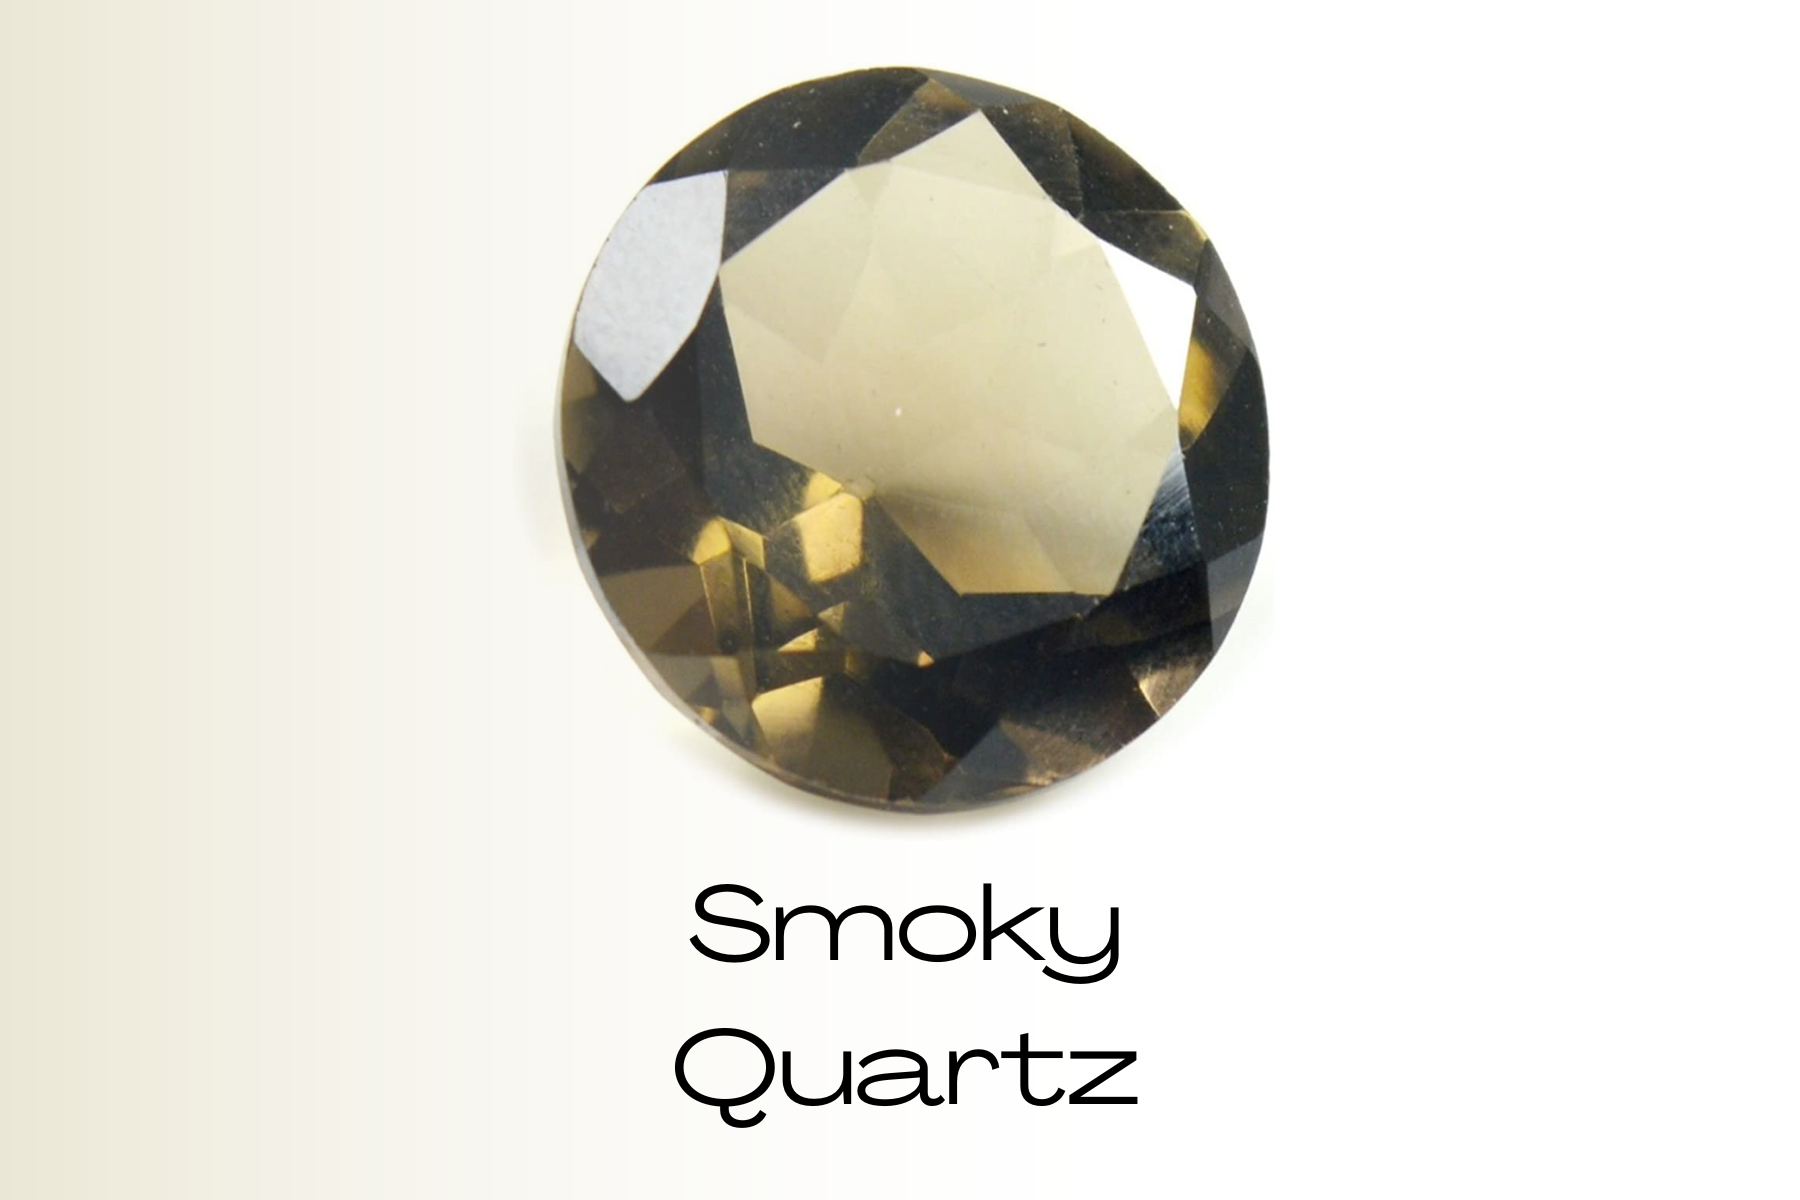 A round smoky quartz stone